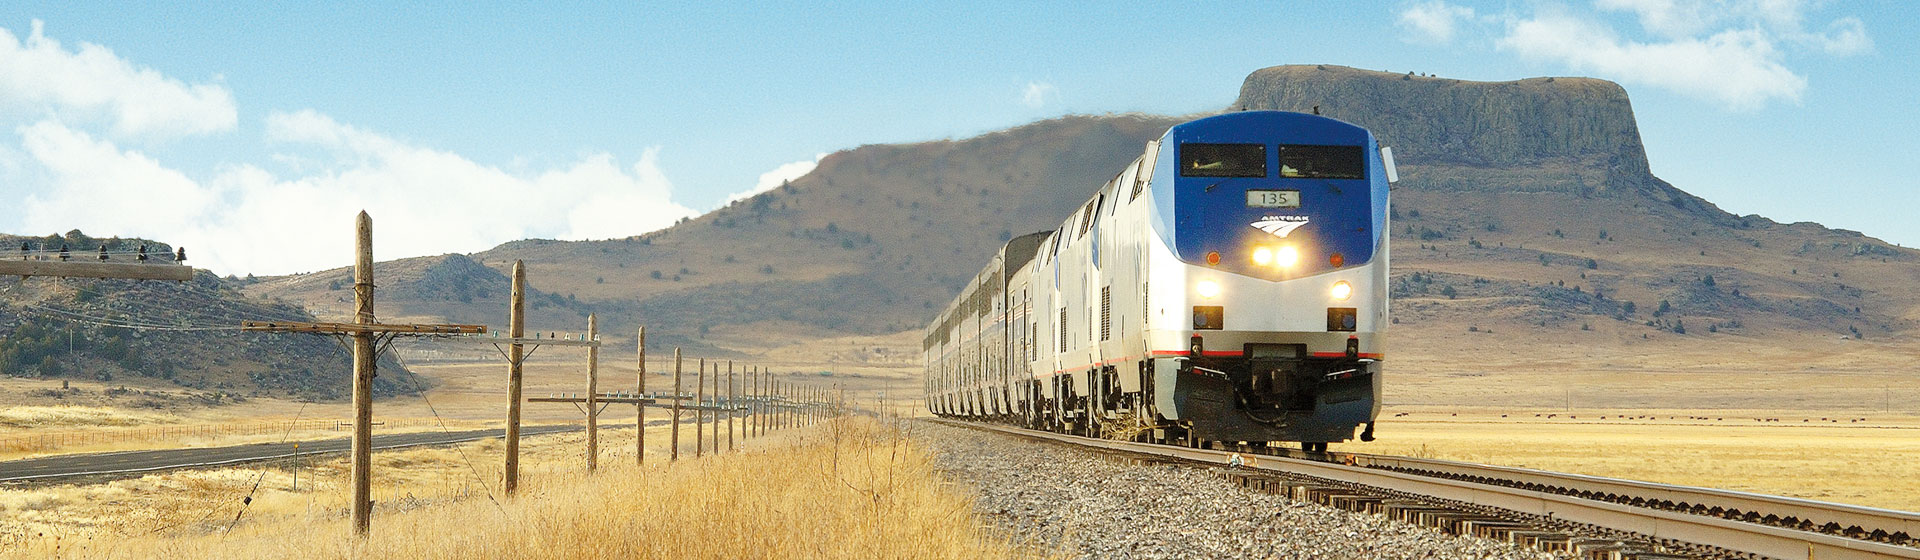 Amtrak tåg i USA.